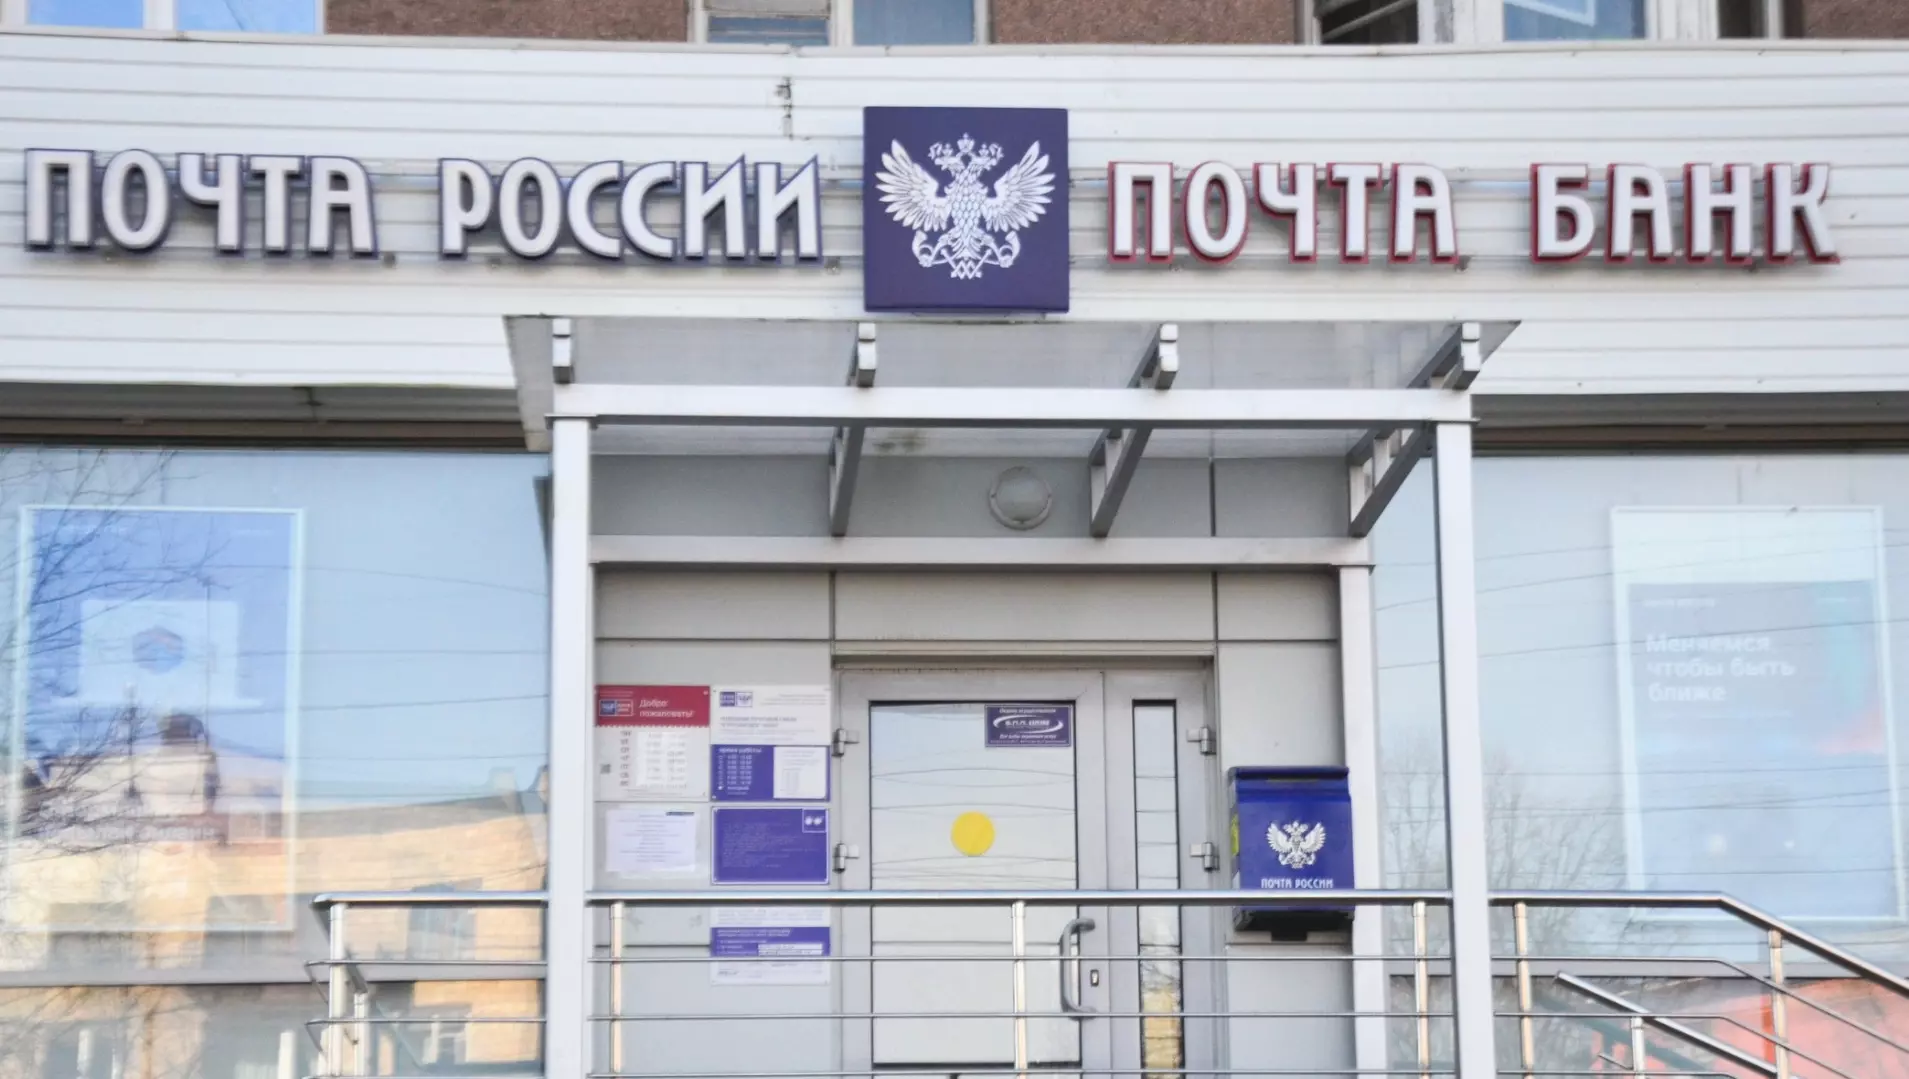 Мошенник выдал себя за специалиста по ремонту терминалов и выманил у сотрудников более 400 тыс. рублей.